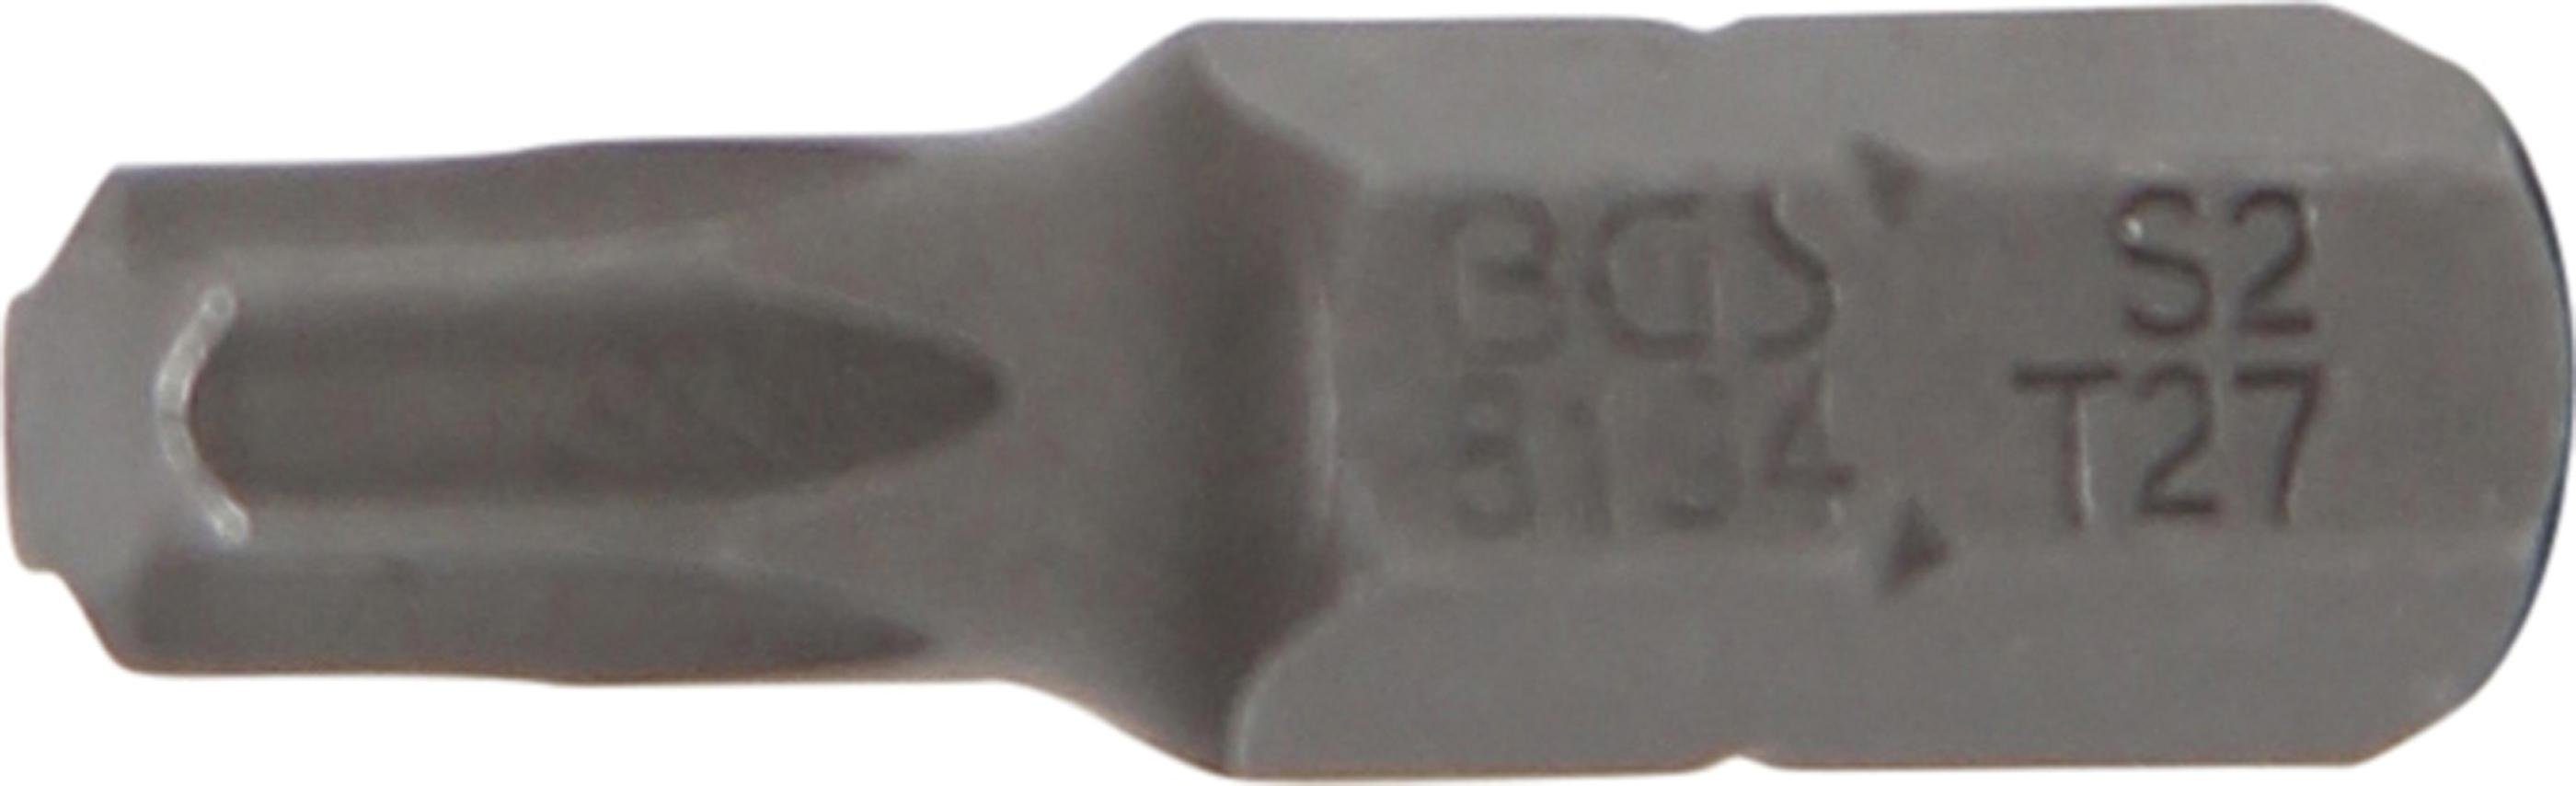 Außensechskant Antrieb Torx) (für 6,3 Bit-Schraubendreher technic mm (1/4), T27 BGS T-Profil Bit,